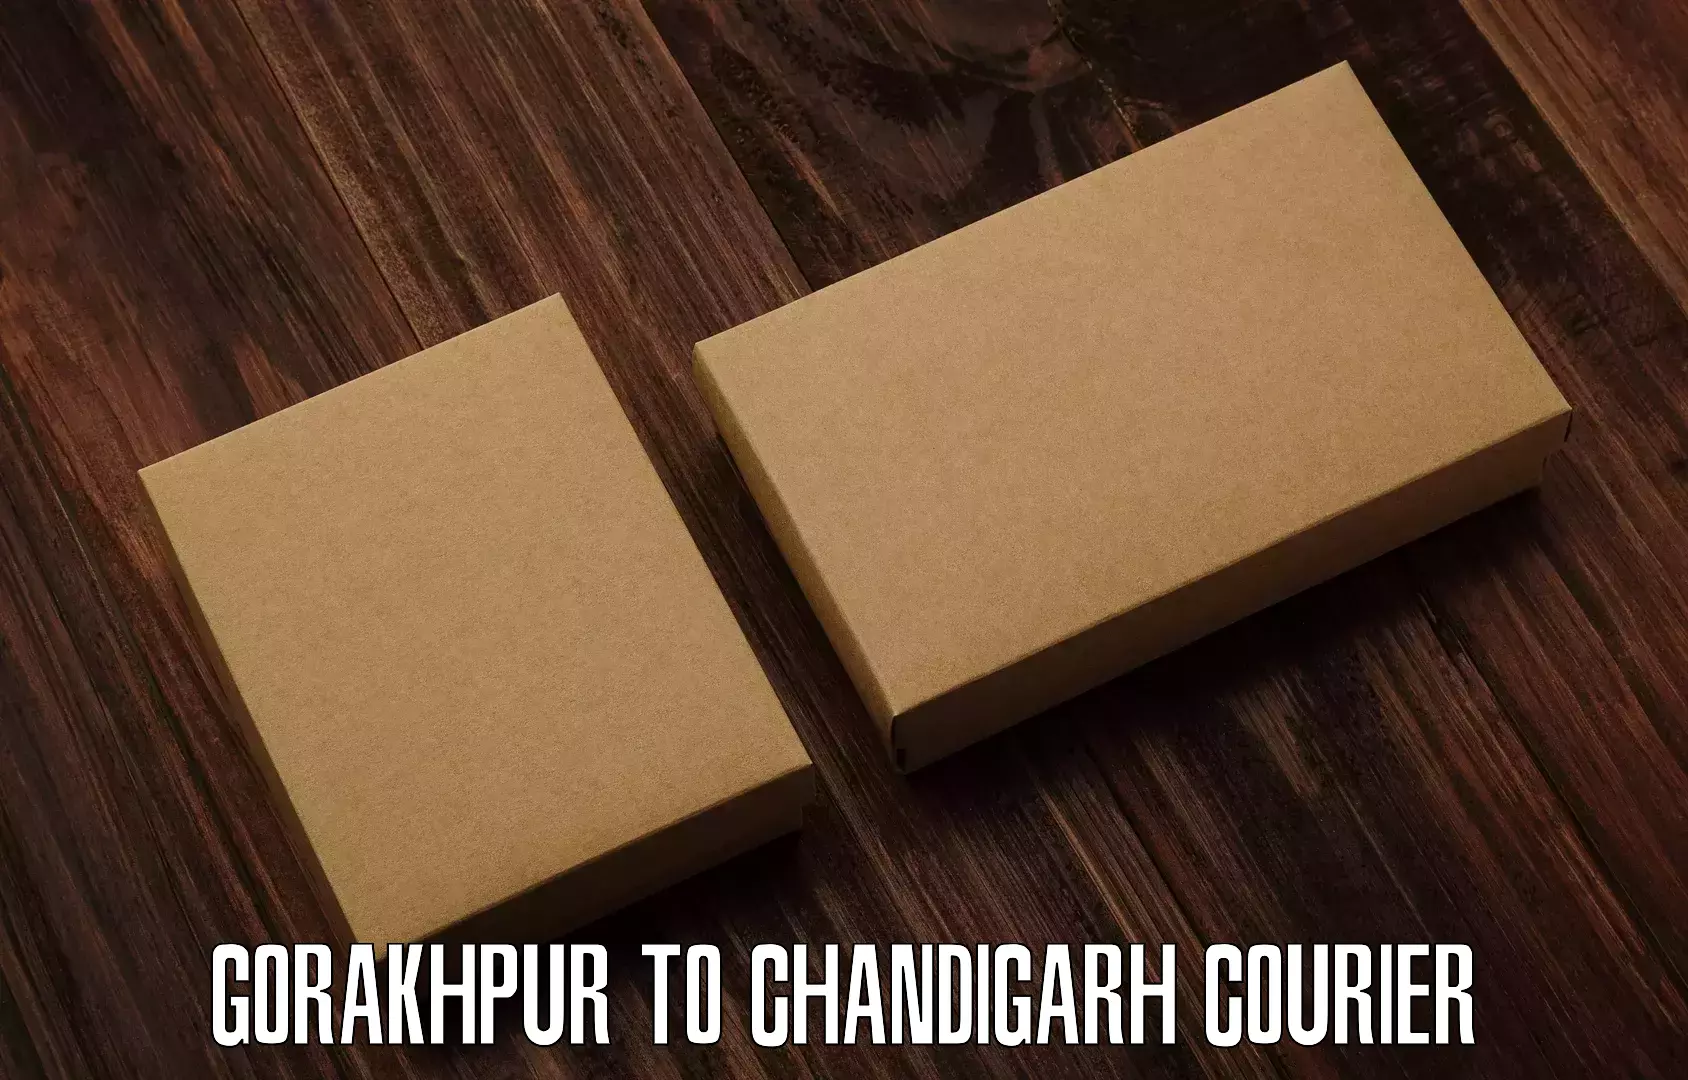 Courier service booking Gorakhpur to Chandigarh